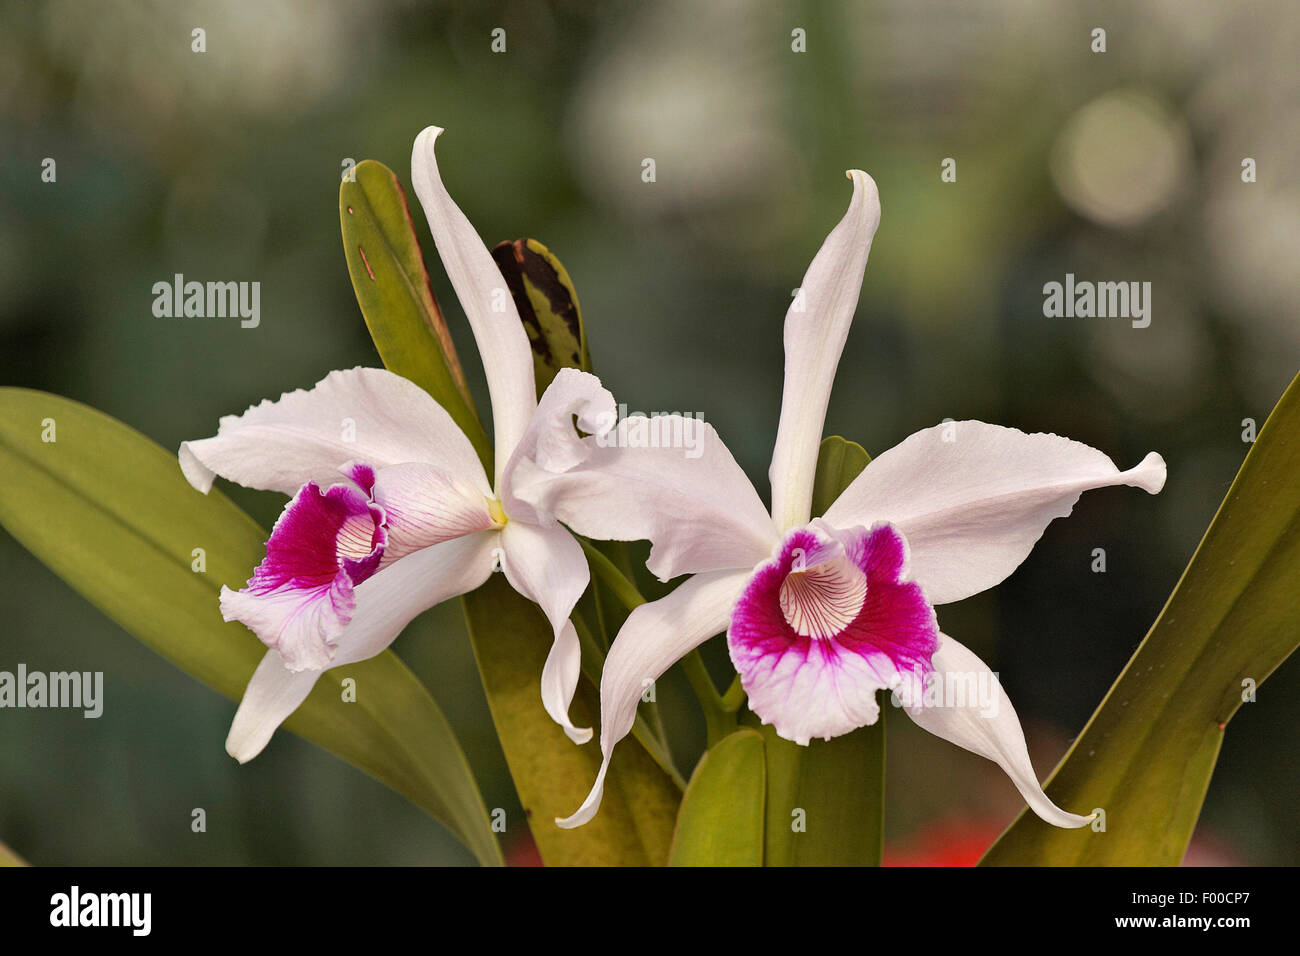 Cattleya (Cattleya purpurata, Laelia purpurata), flowers Stock Photo